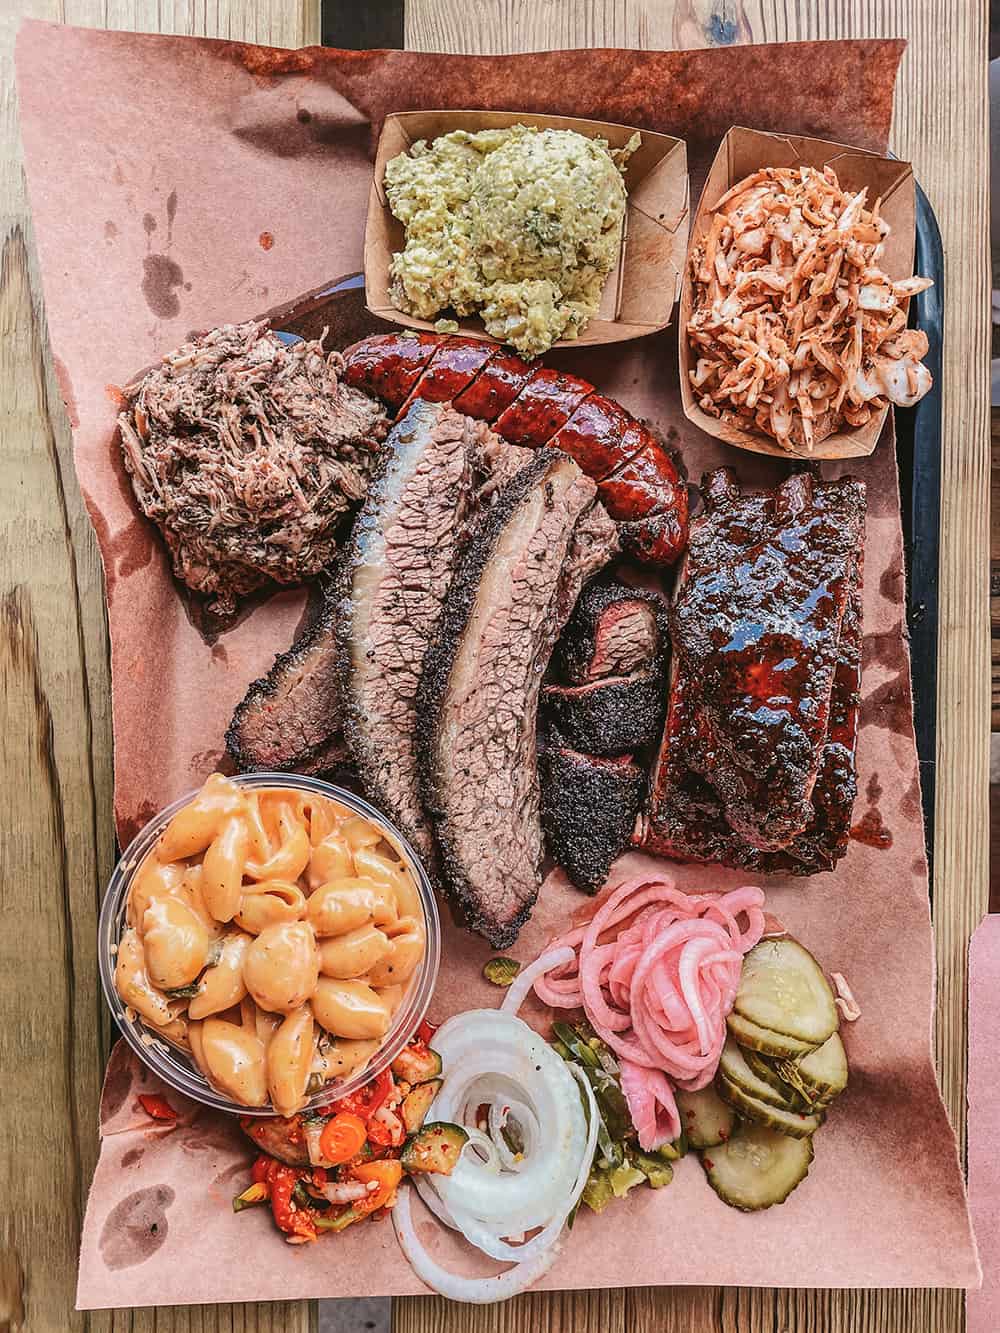 La Barbecue in Austin Texas